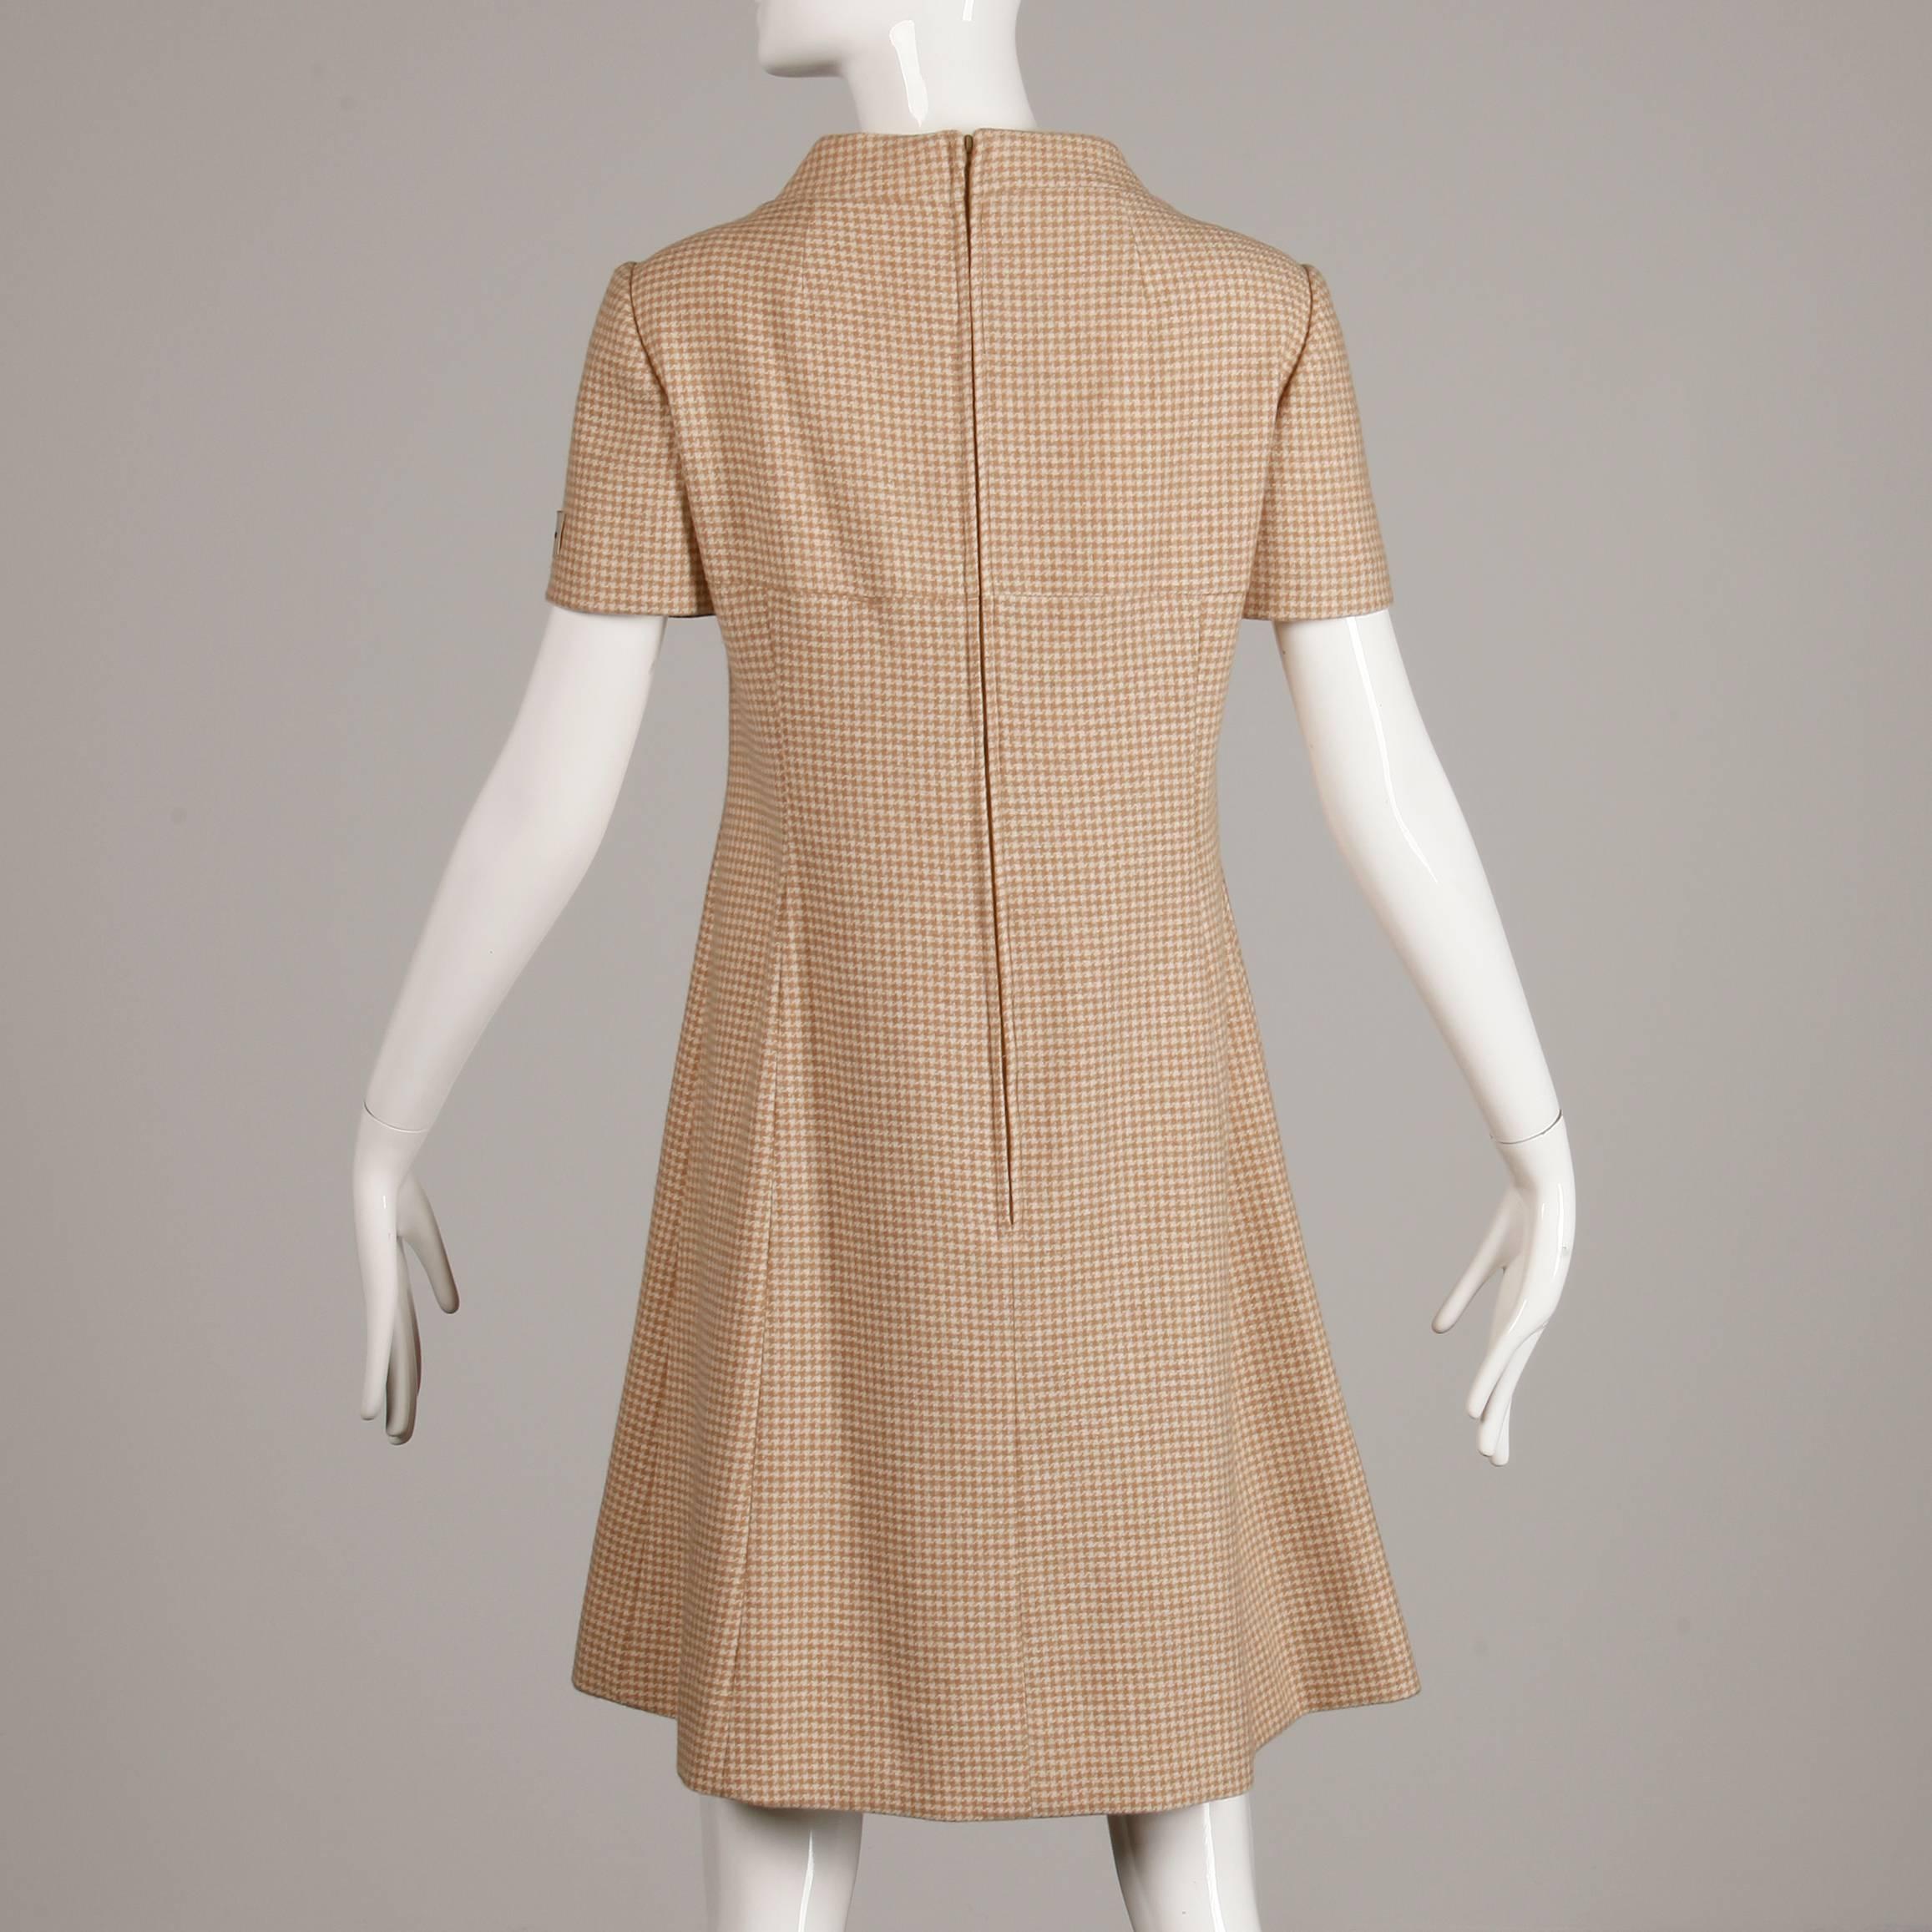 Beige Unworn 1960s Charles Cooper Vintage 100% Cashmere Houndstooth Mod Shift Dress For Sale